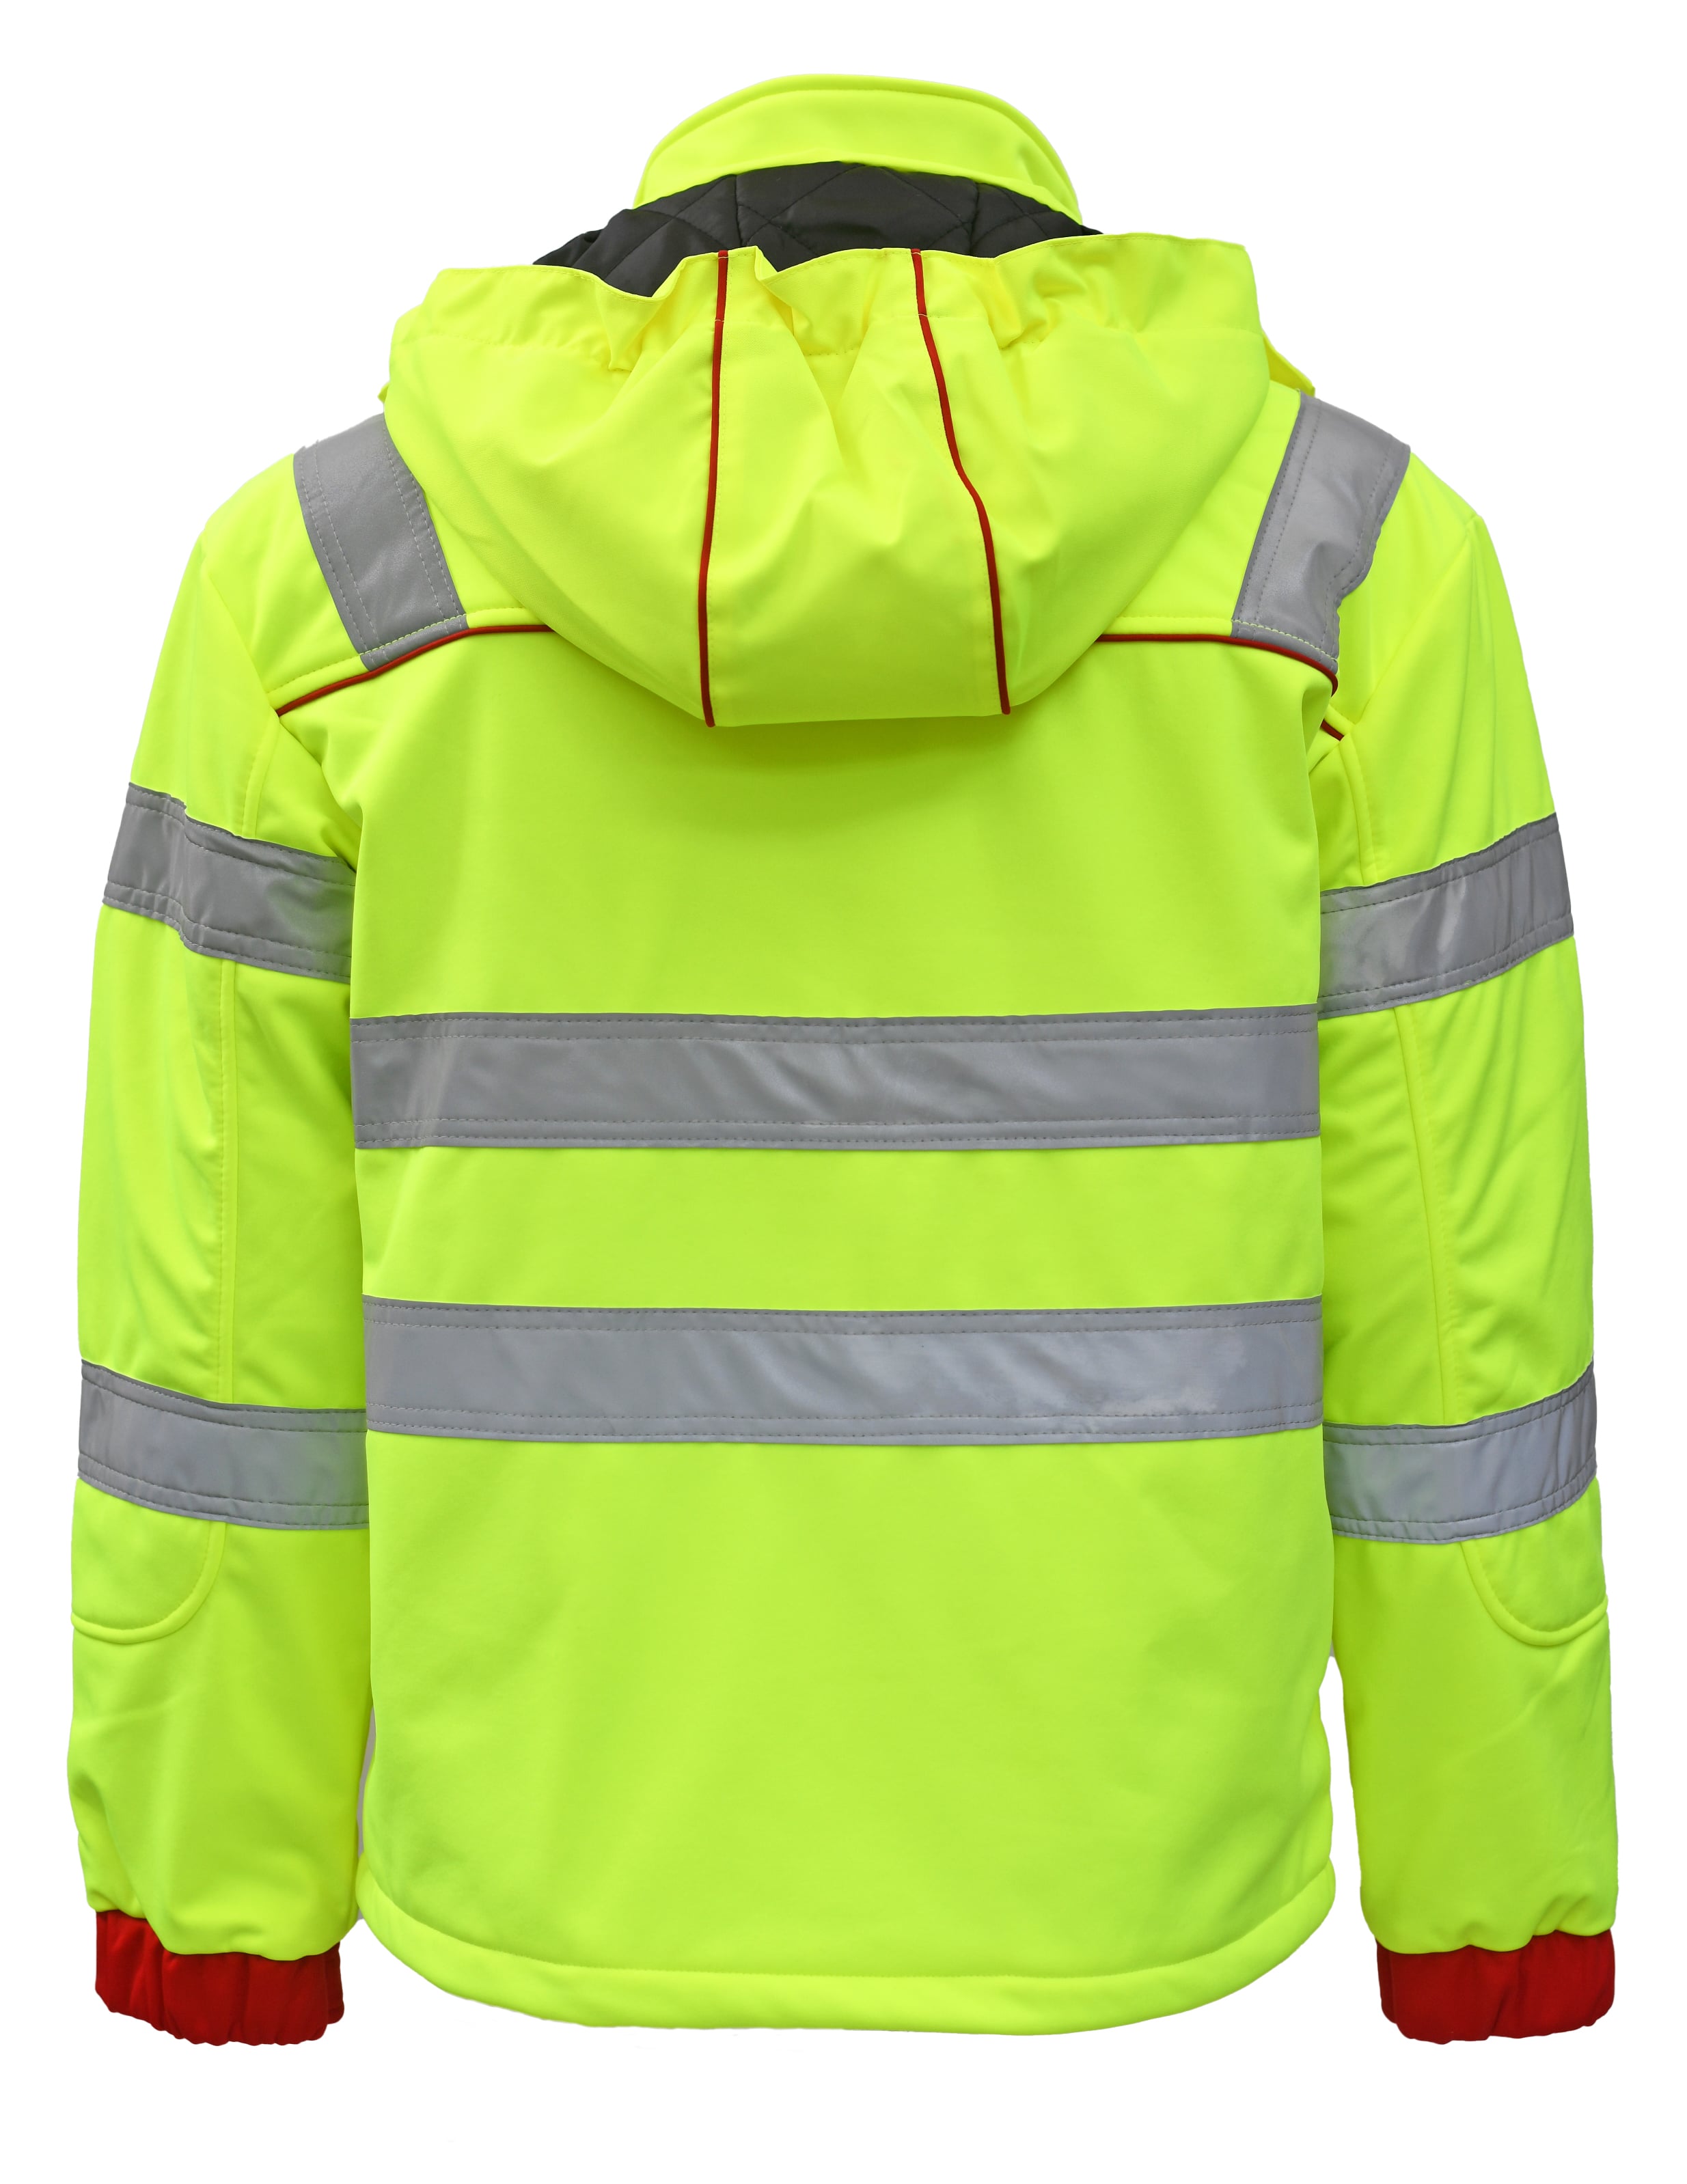 Rescuewear Softshelljacke Dynamic HiVis Klasse 3 Rot / Neon Gelb - XL